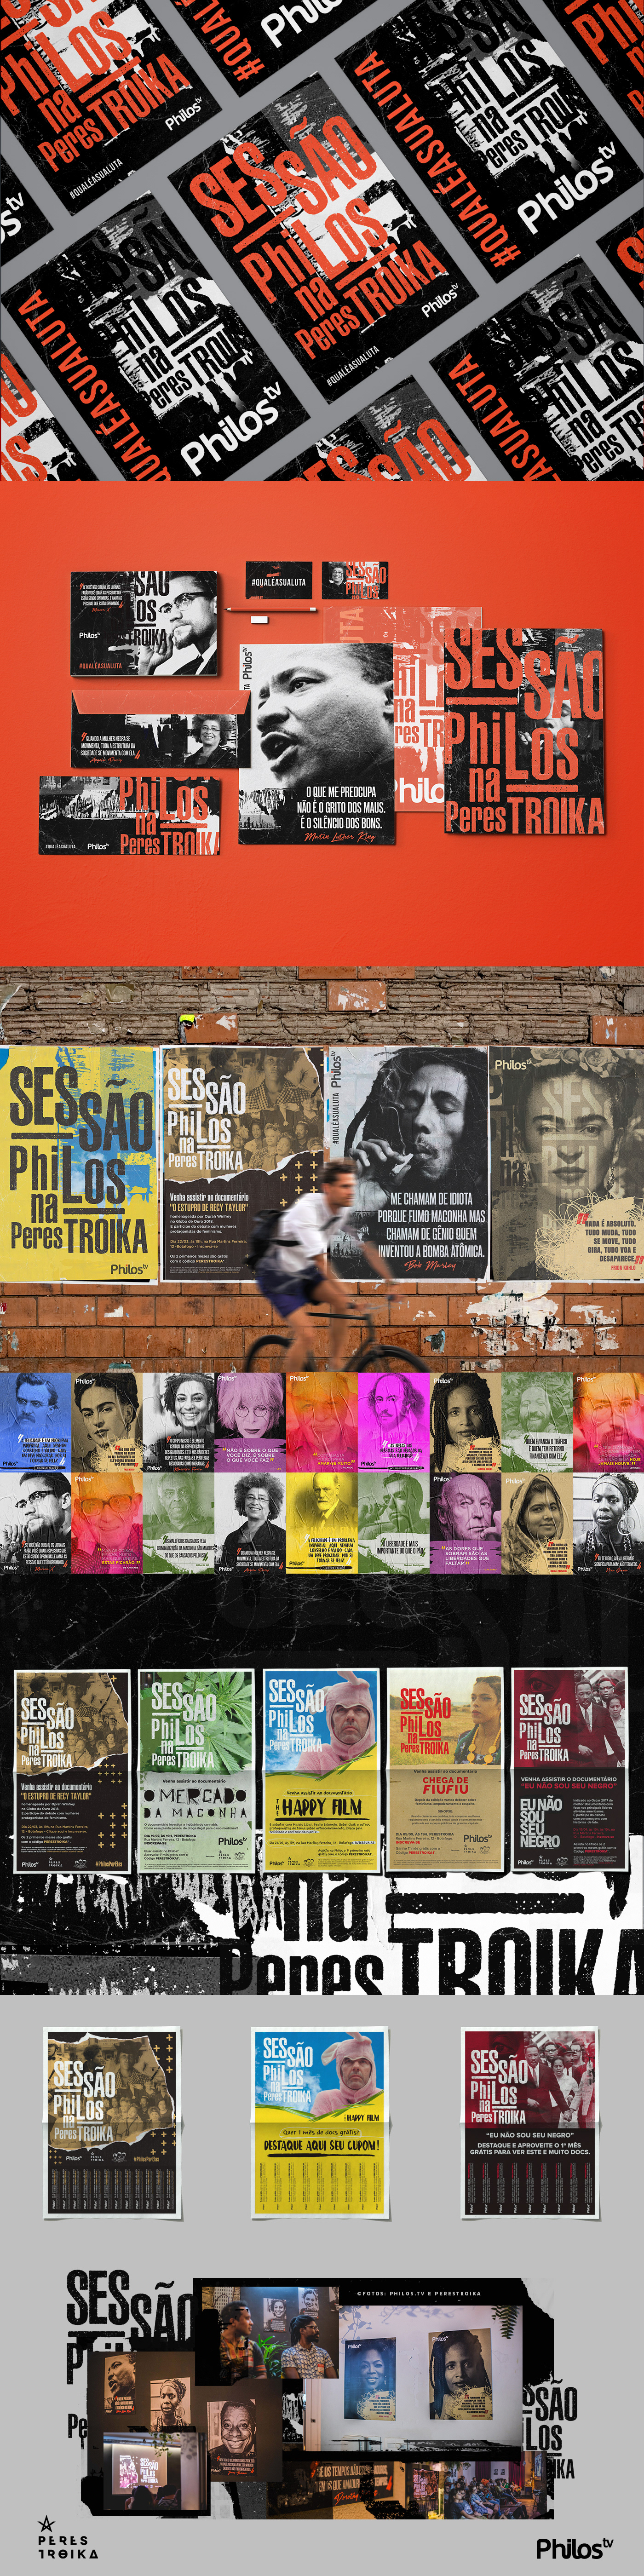 poster cartaz design gráfico documentário identidade visual Ambientação